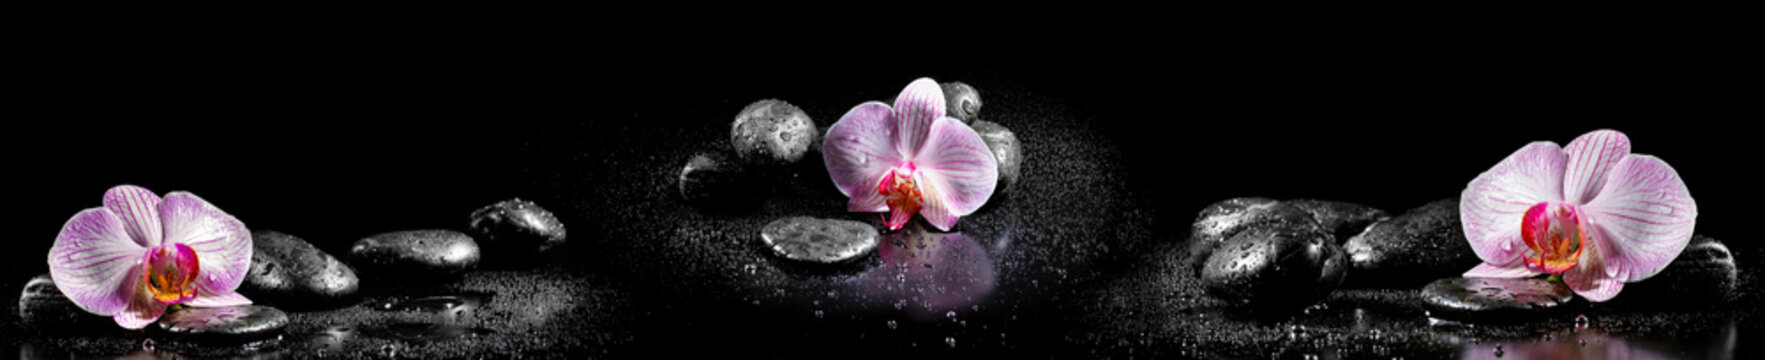 Fototapeta Horyzontalna panorama z różowymi orchideami i zen kamieniami na czarnych ba